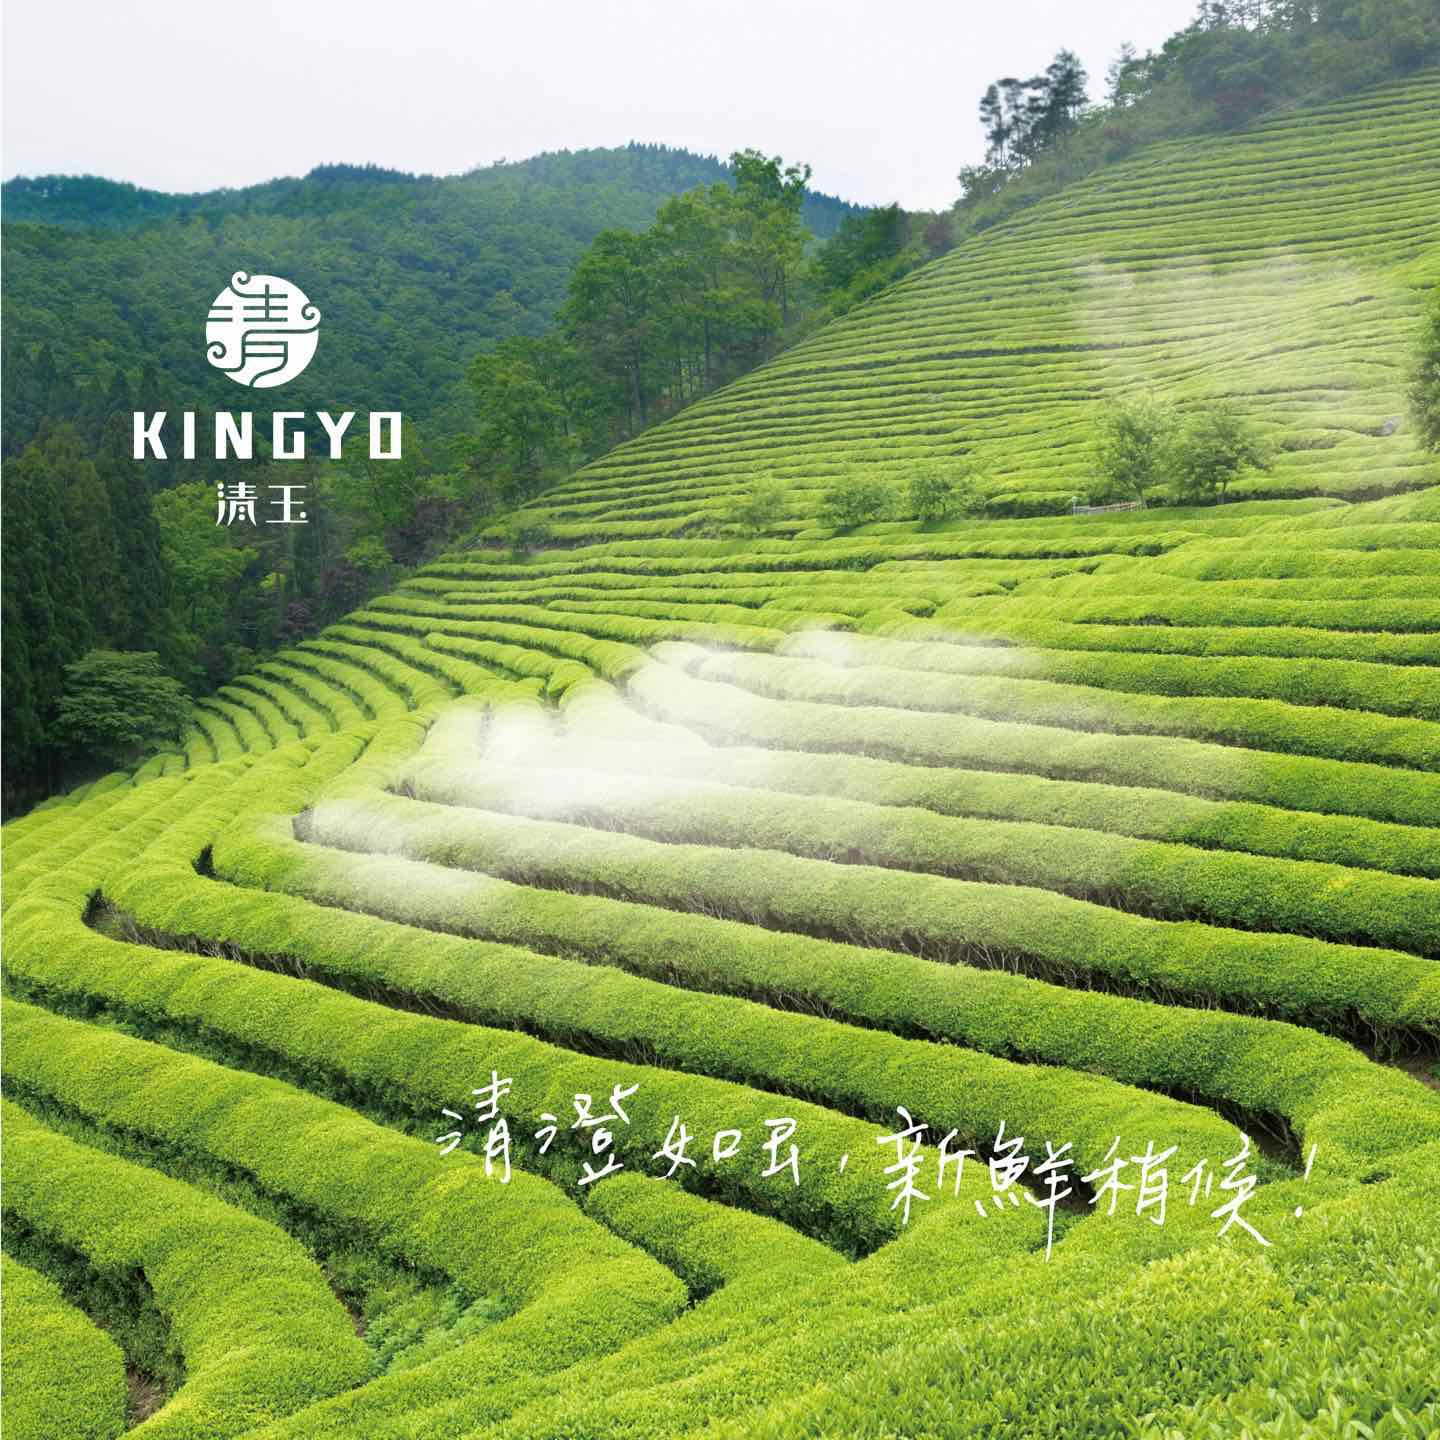 清玉好茶Kingyo的特許經營香港區加盟店項目2